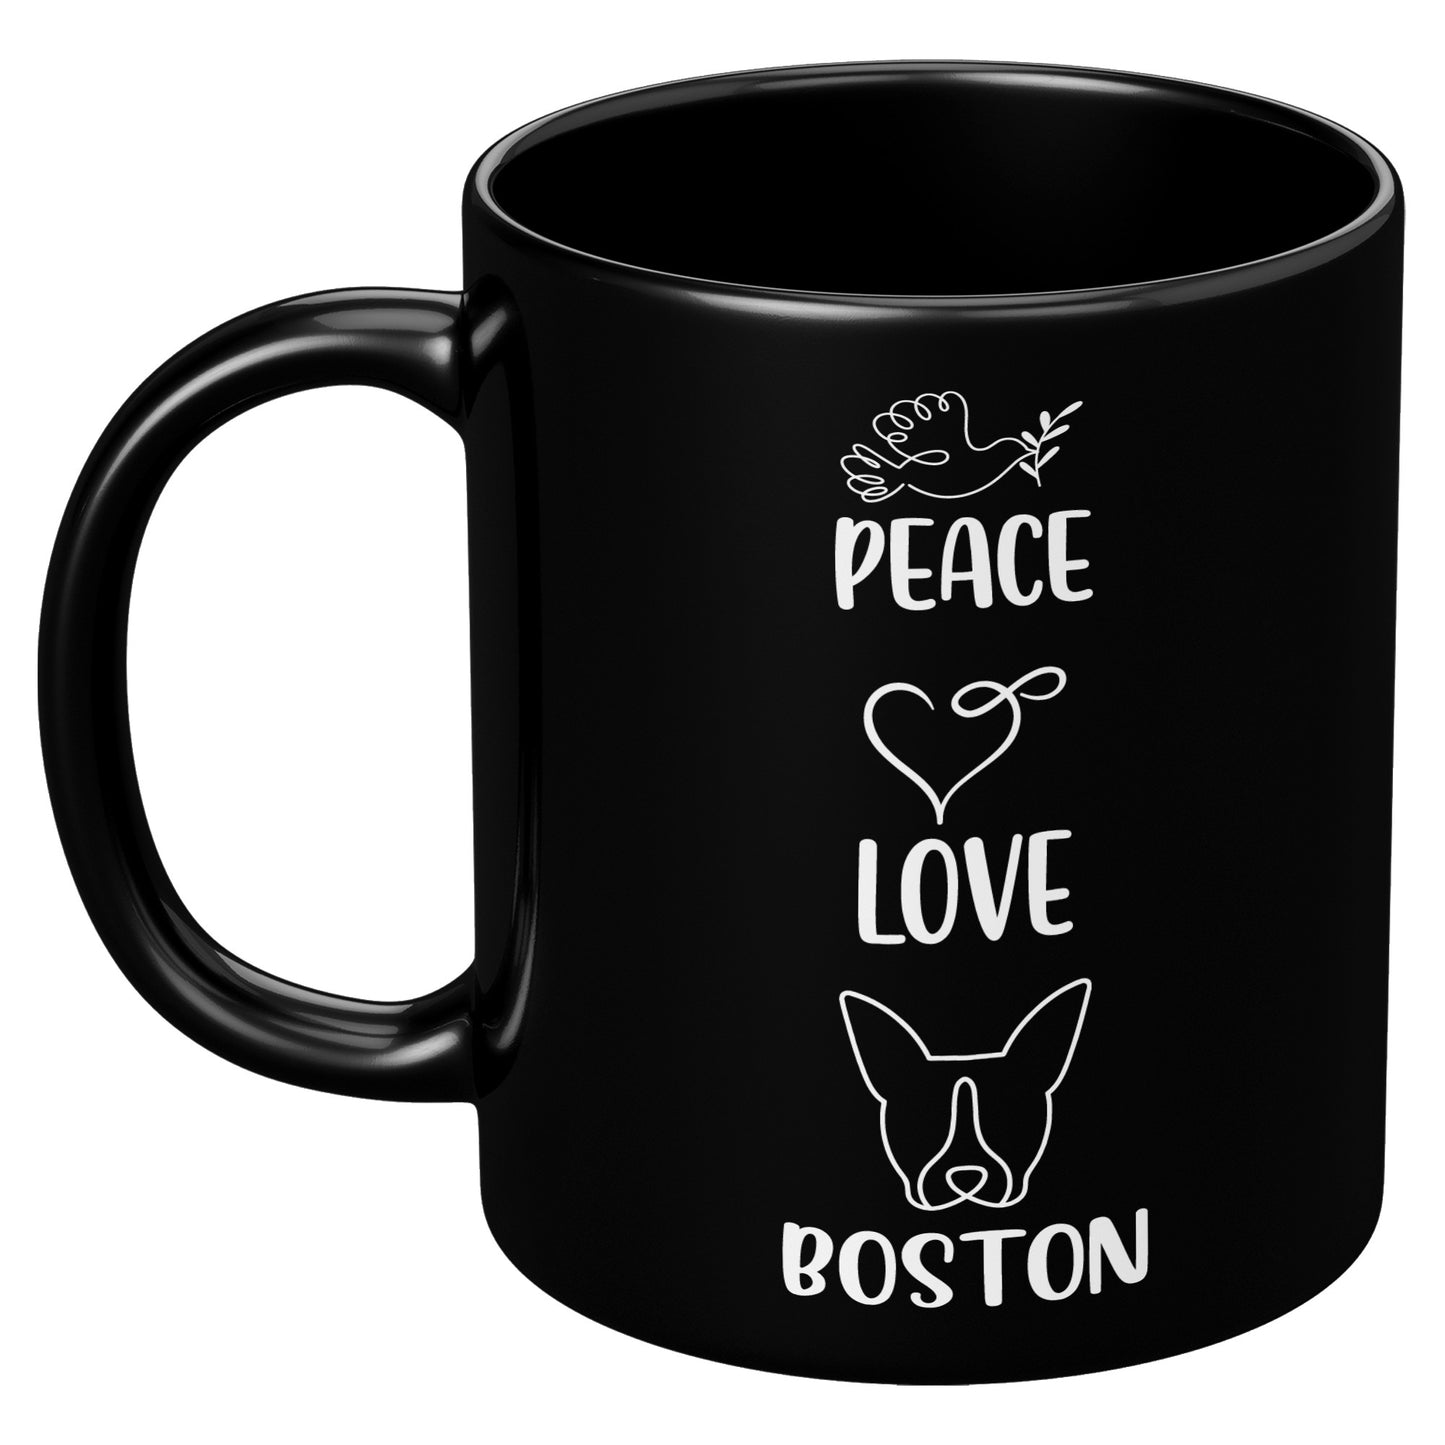 Sherlock-Mug for Boston Terrier lovers